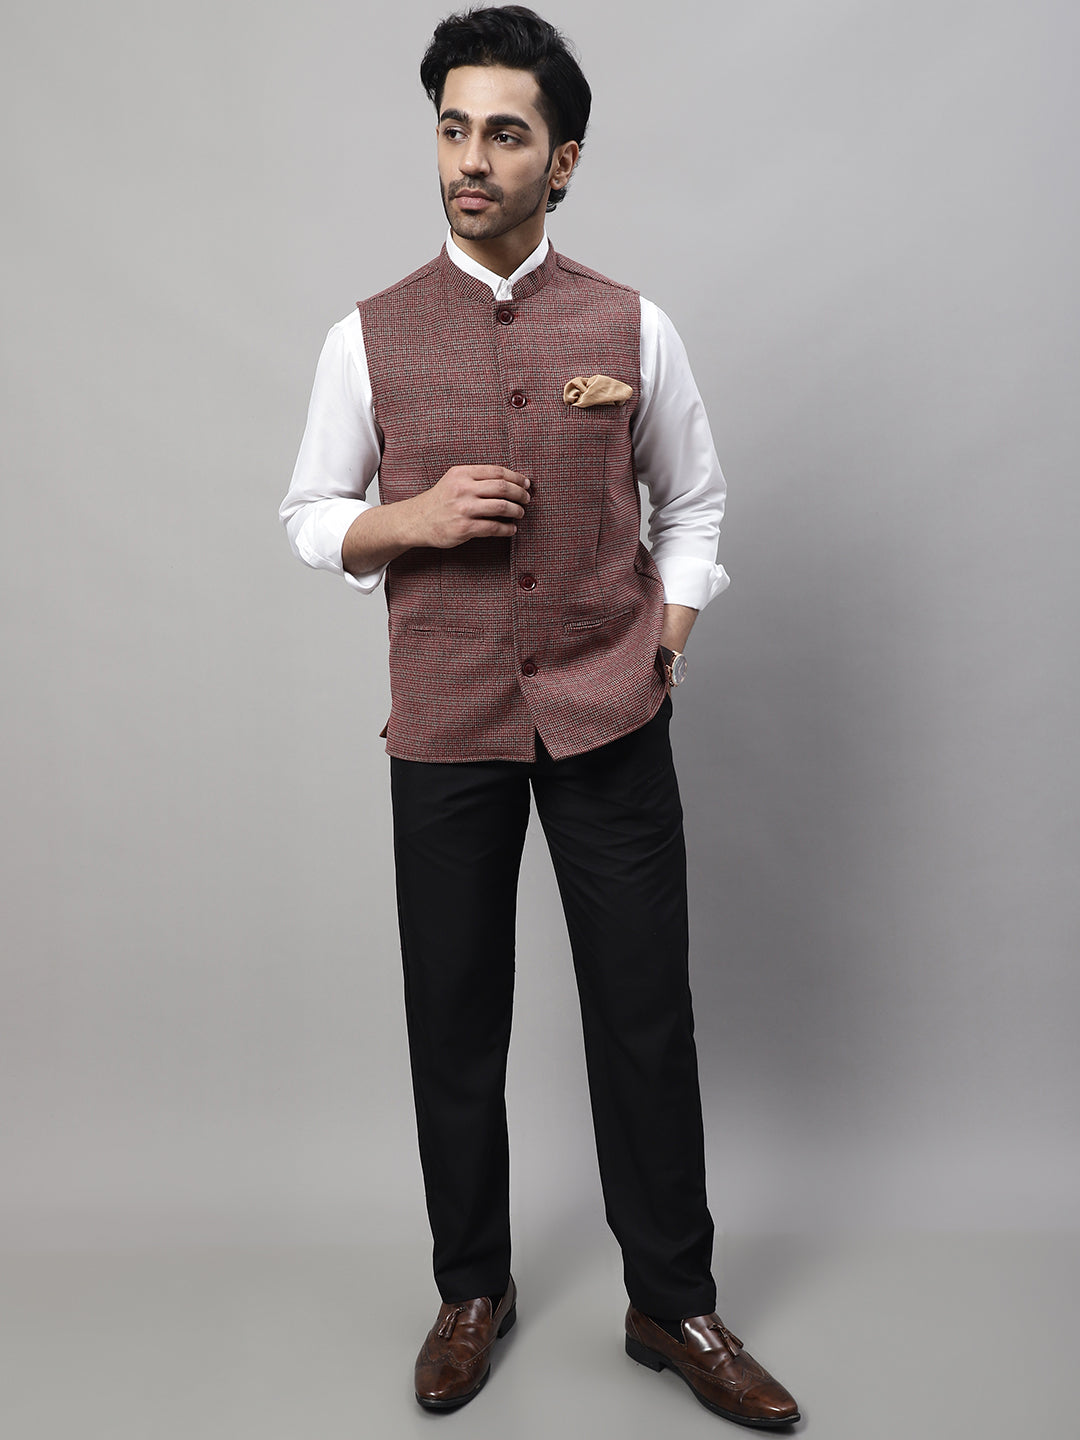 Sleeveless Nehru Jackets Mens Plain Nehru Jacket at Rs 650/piece in Delhi